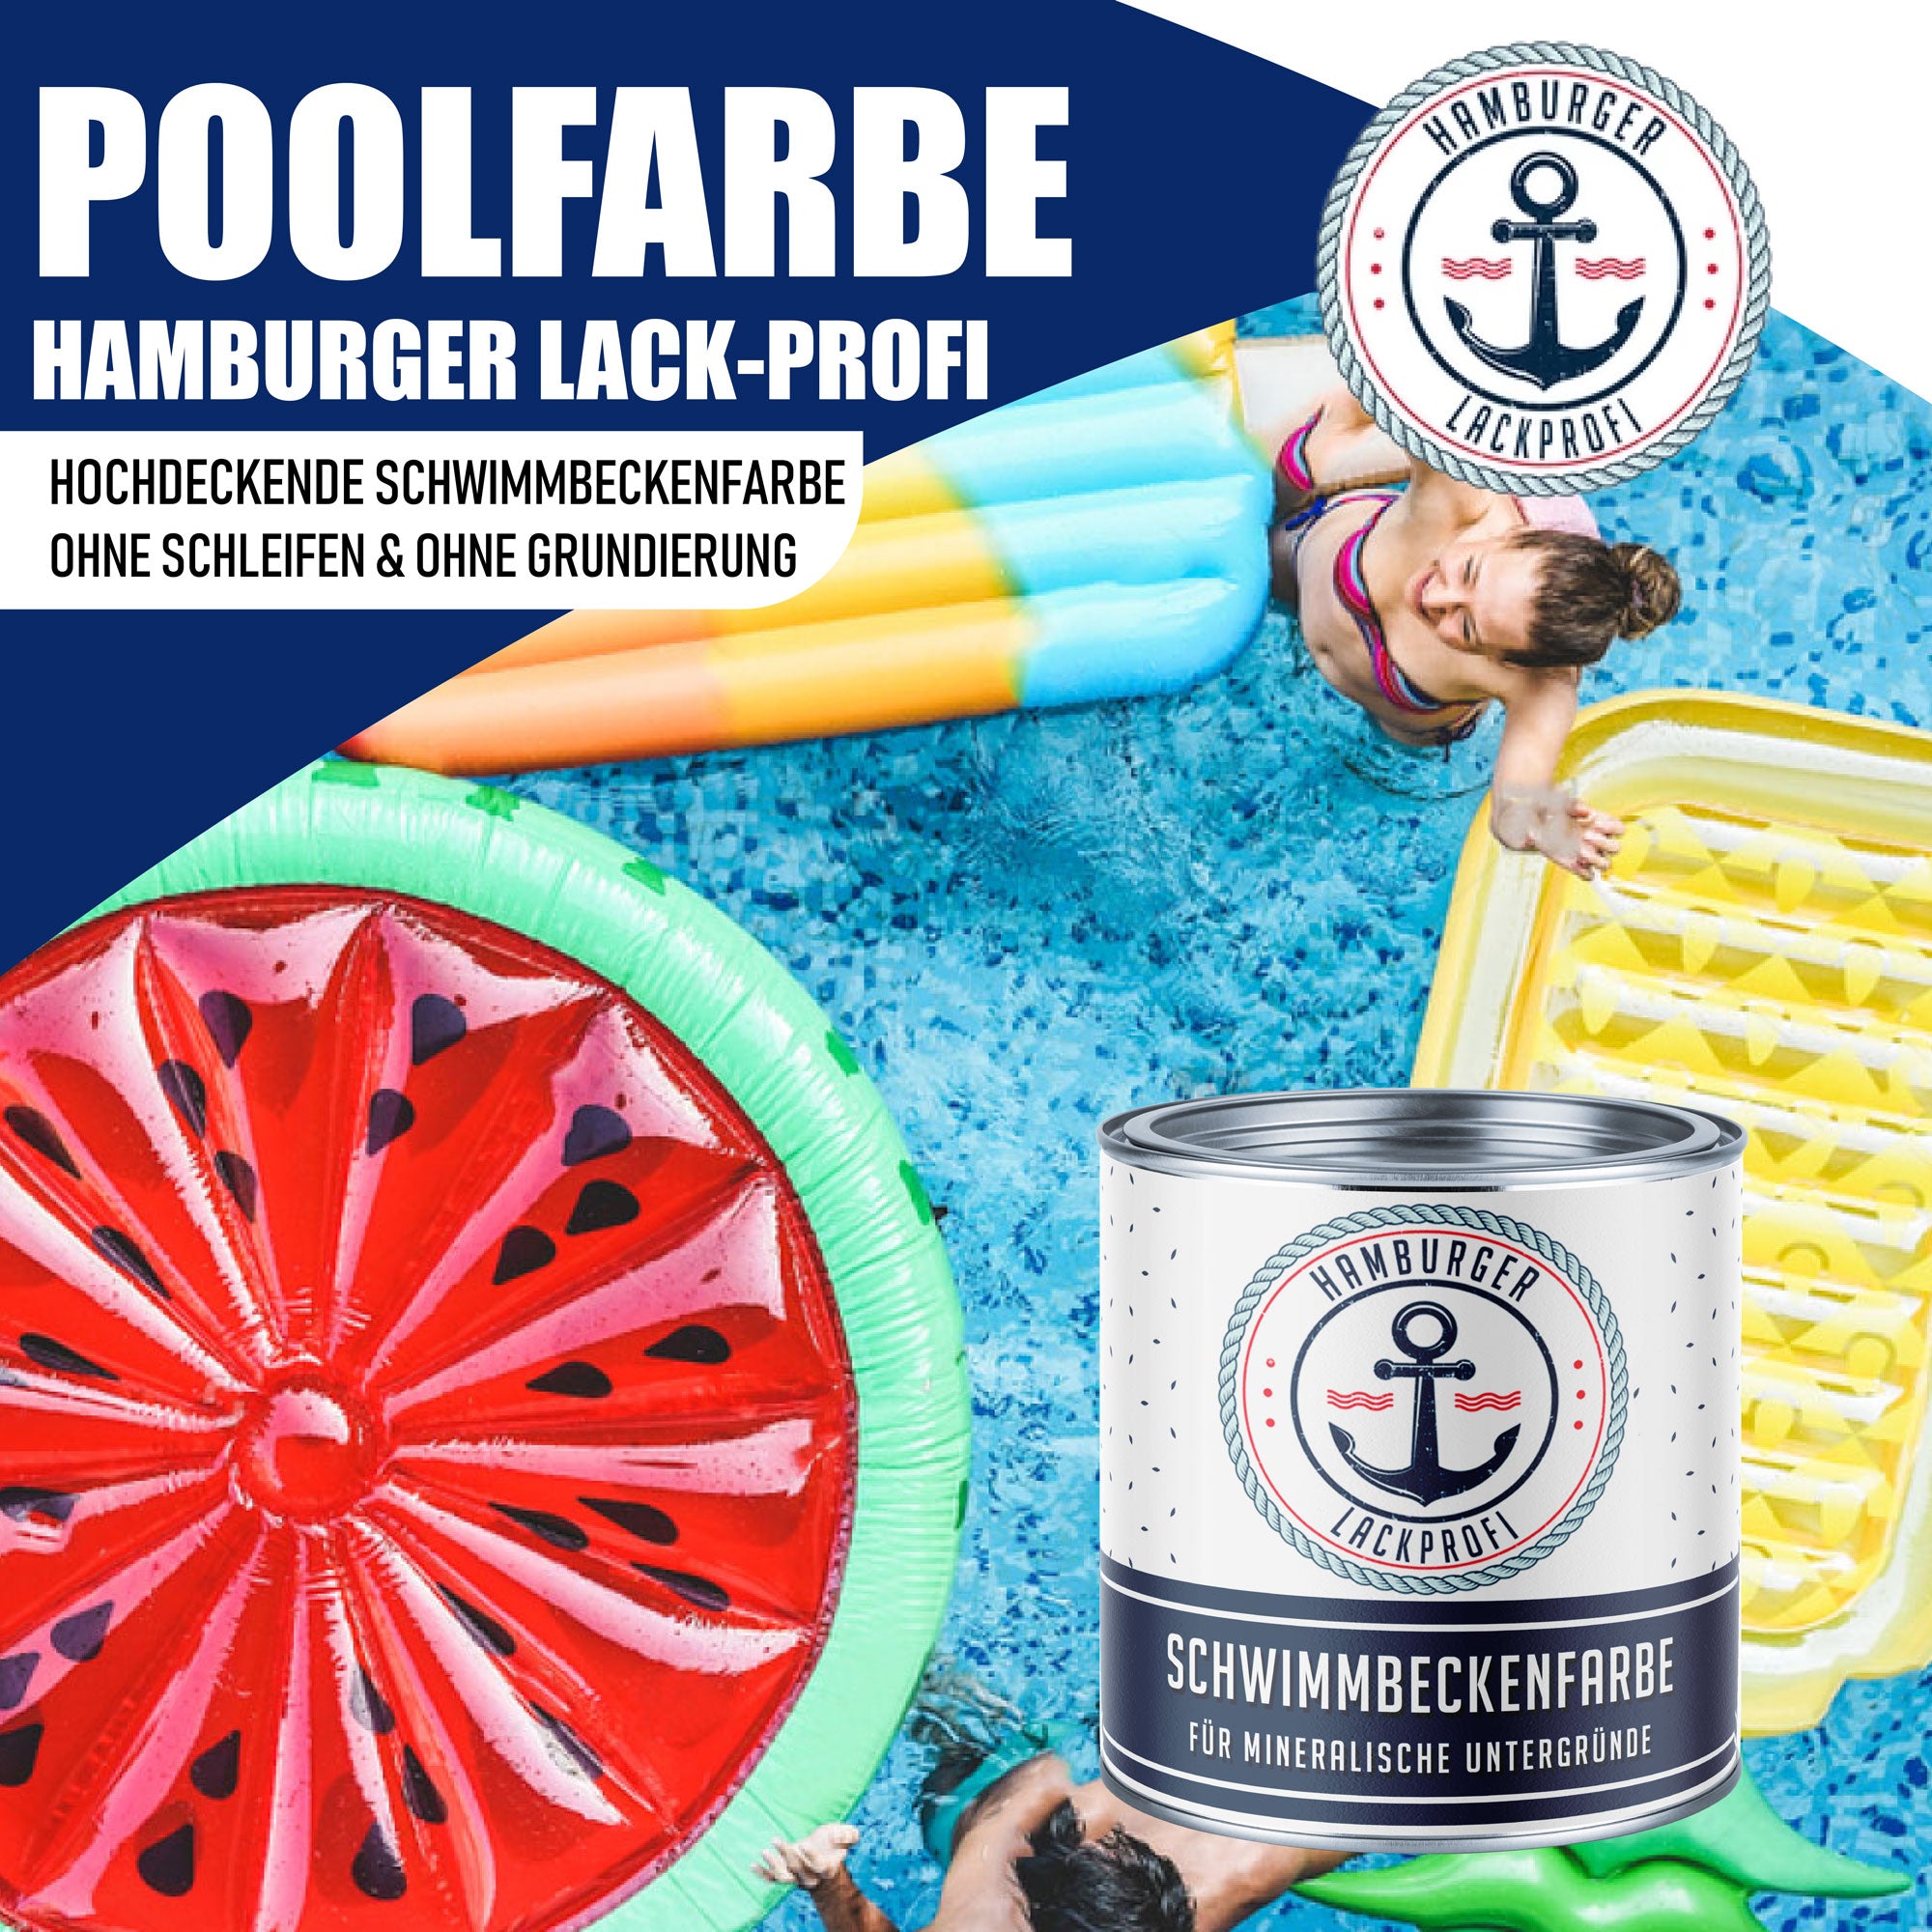 Hamburger Lack-Profi Schwimmbeckenfarbe Cremeweiß RAL 9001 - hochdeckende Poolfarbe